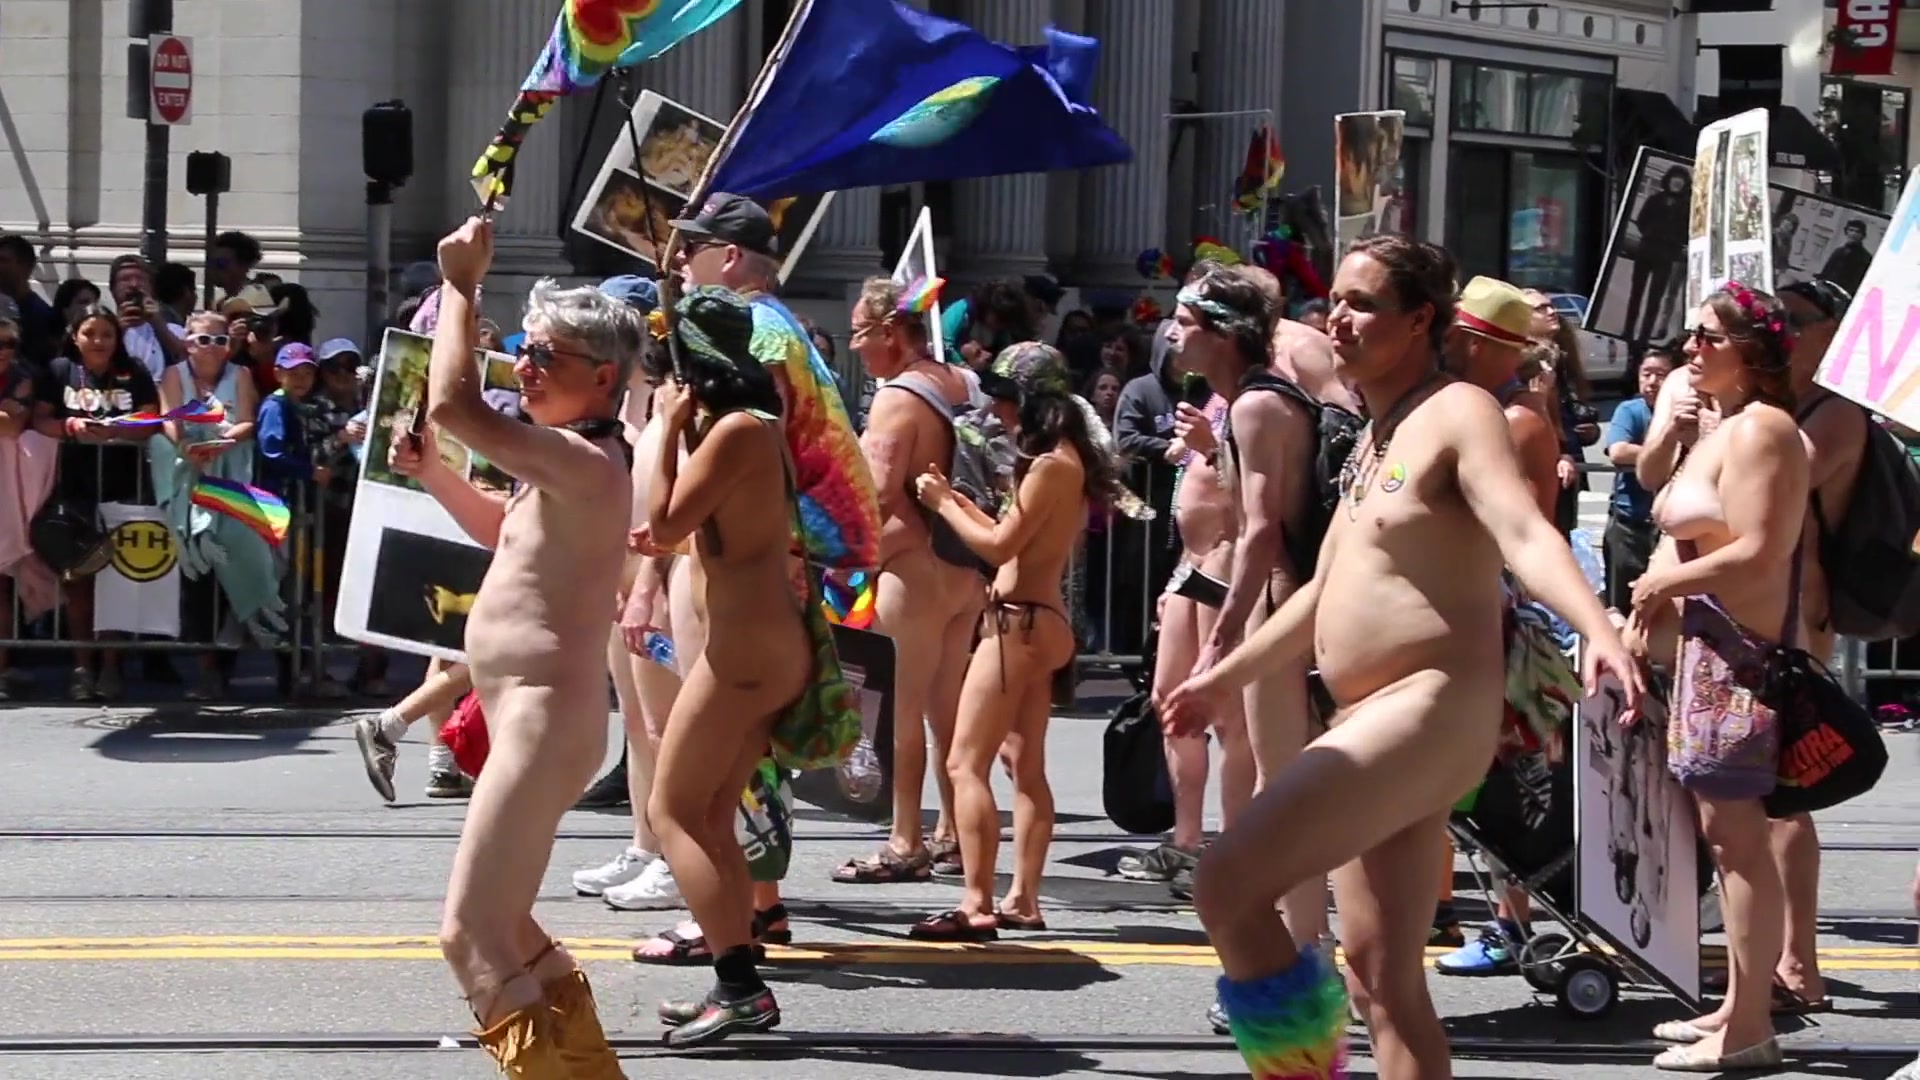 Nude love parade in san francisco. 